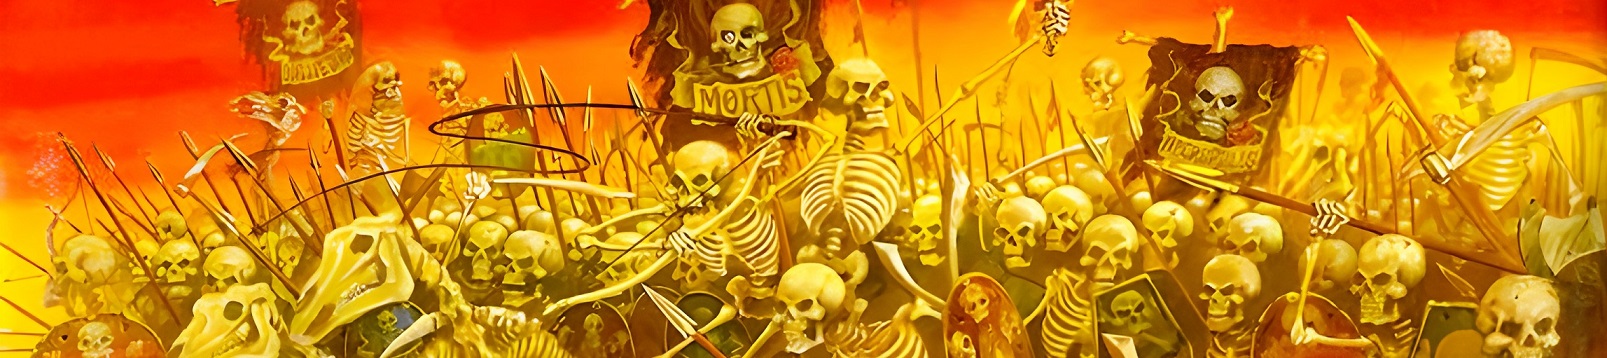 Oldhammer-Warhammer-skeleton-banner-Skeleton-Horses-2246204-wallhere